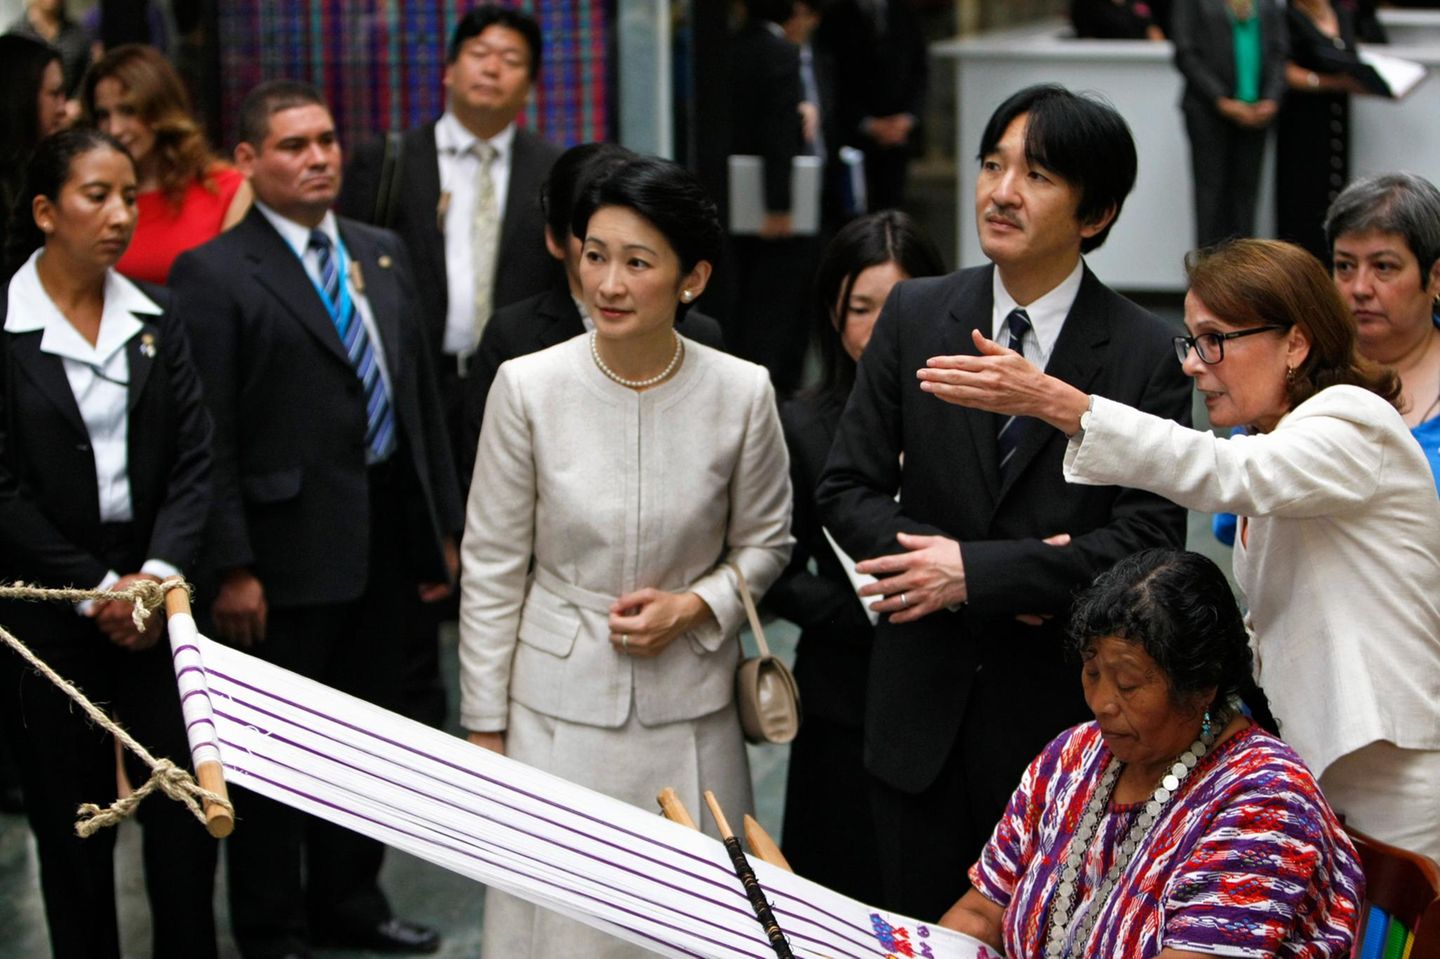 1. Oktober 2014: Prinz Akishino und seine Frau Kiko sind auf einem achttägigen Besuch in Guatemala und Mexico. In Guatemala City besichtigen sie ein Museum.